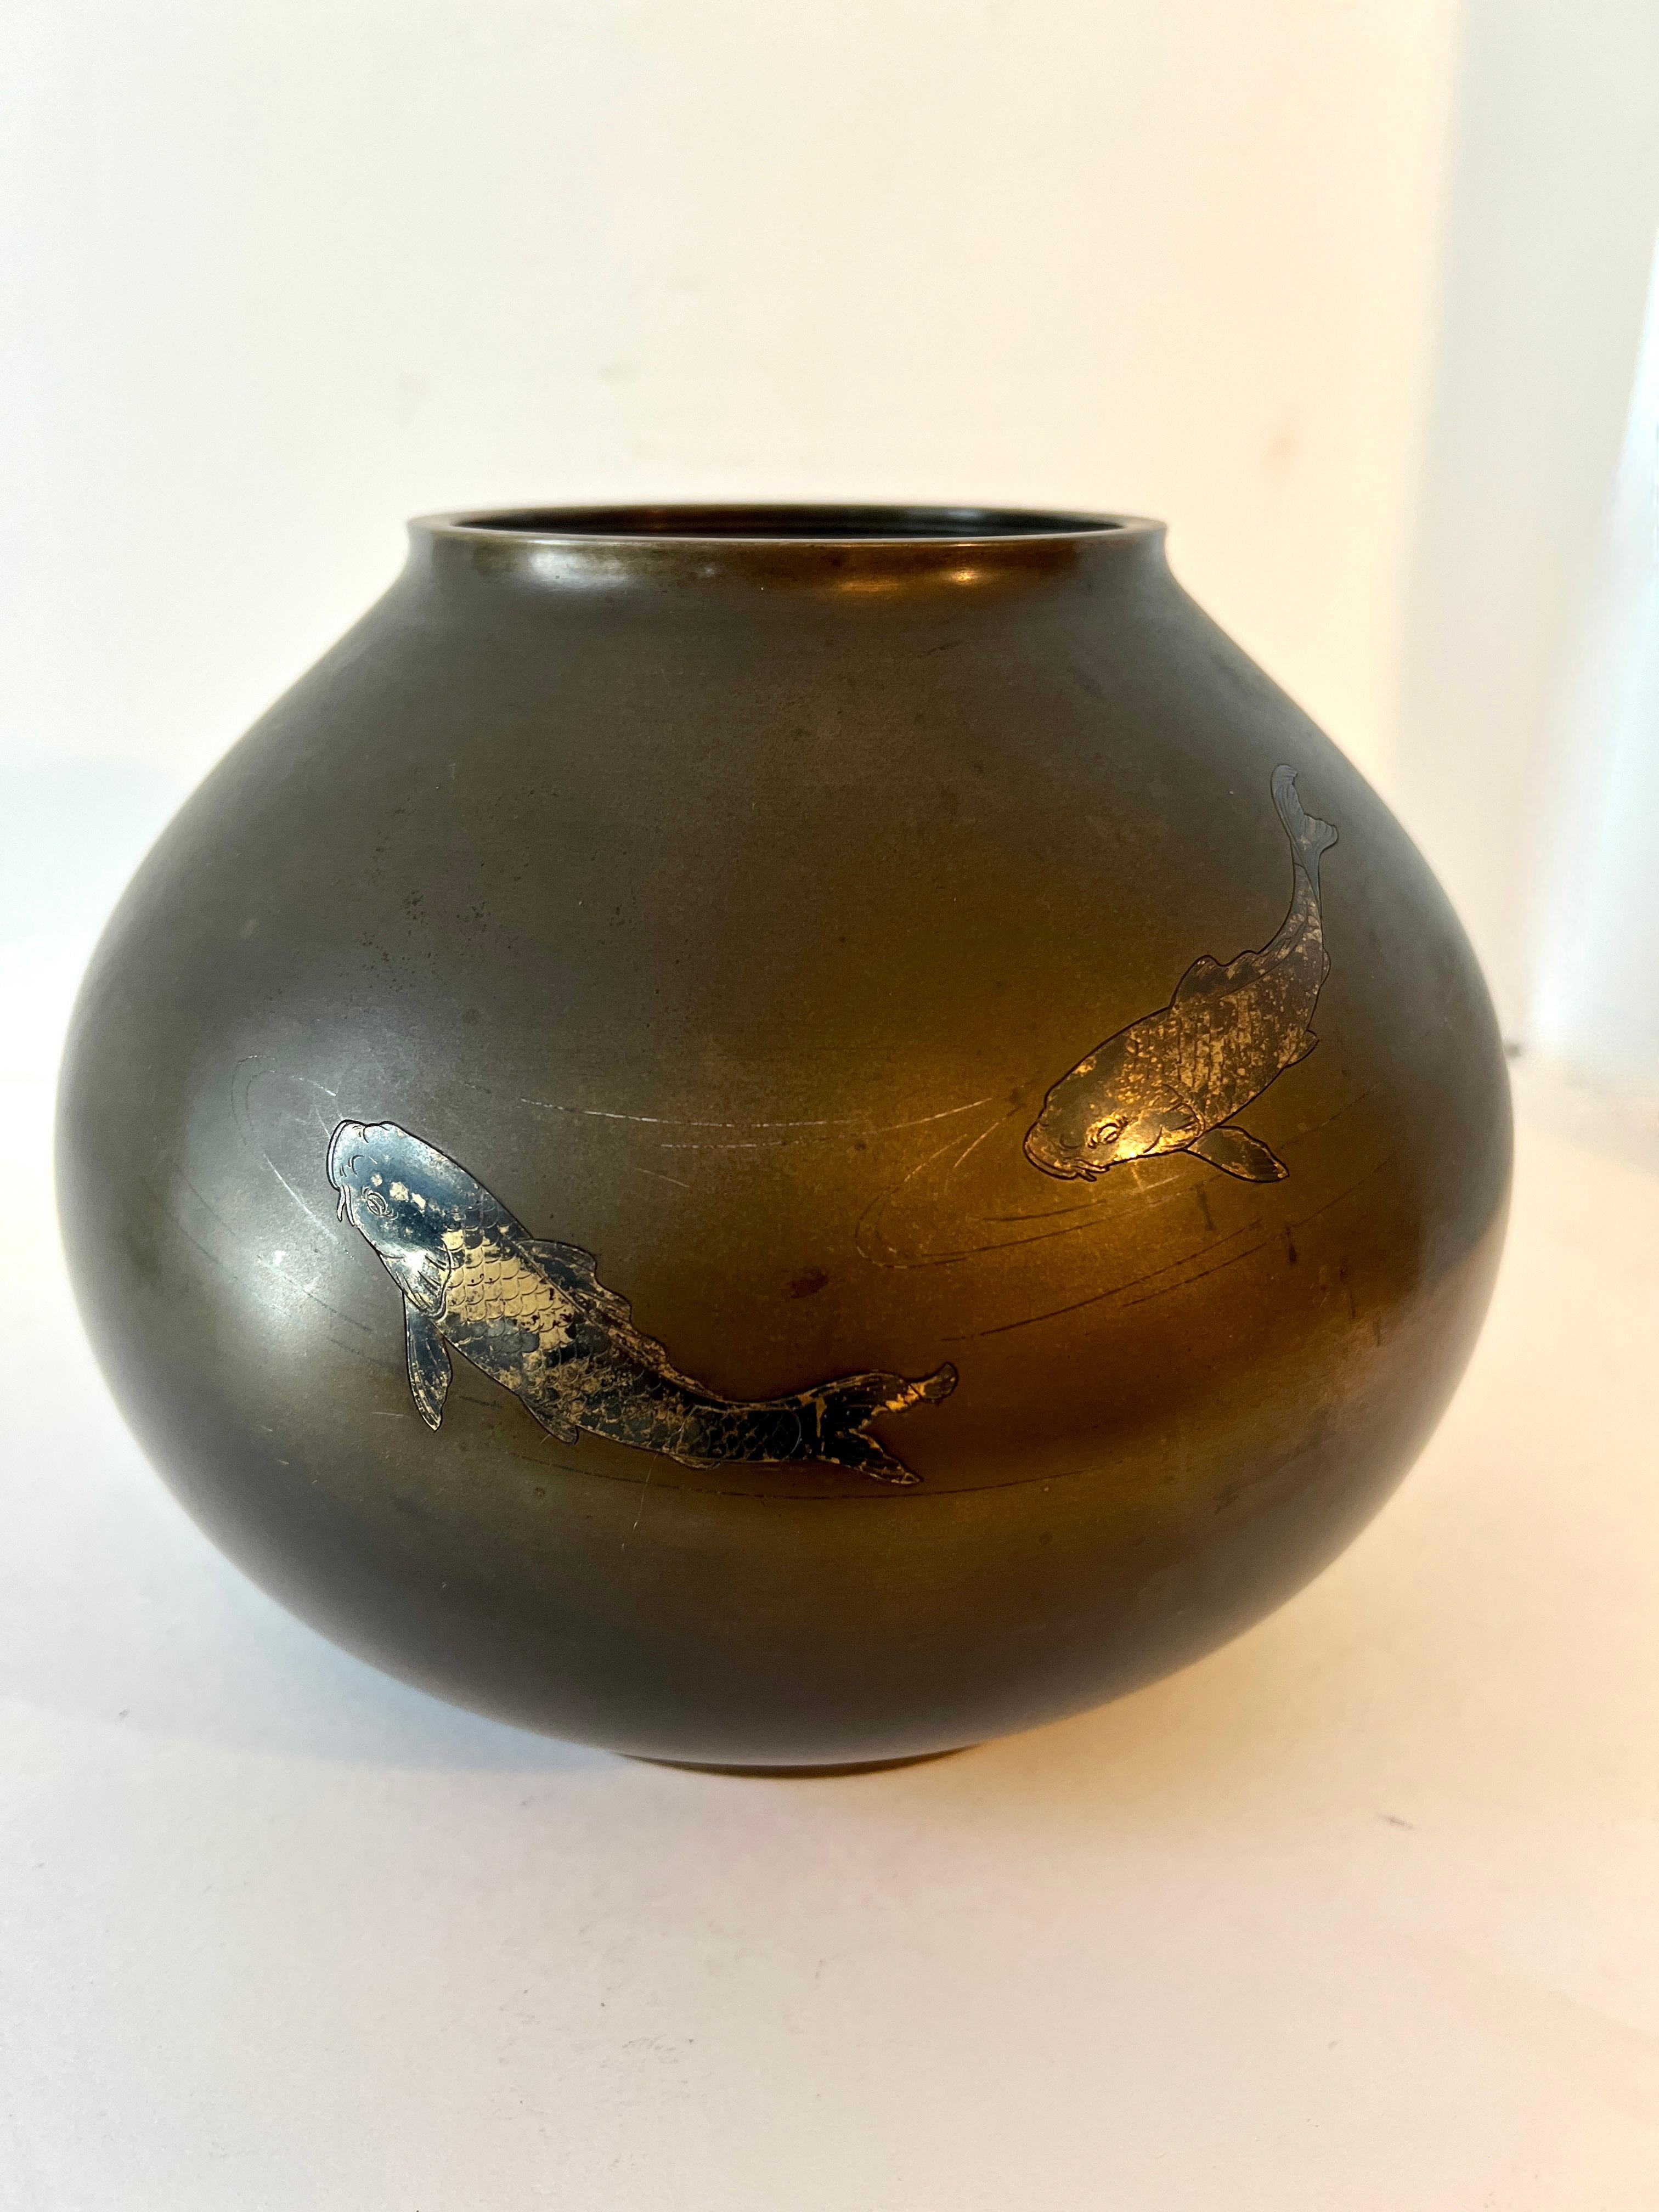 Eine außergewöhnliche kugelförmige asiatische Vase mit geätzten Koi-Fischen mit Silbereinlage, umgeben von anmutigen und minimalistischen Wasserfetzen.

Das Stück ist eine perfekt patinierte Vase aus schwerer Bronze mit Linienätzungen und einem Paar